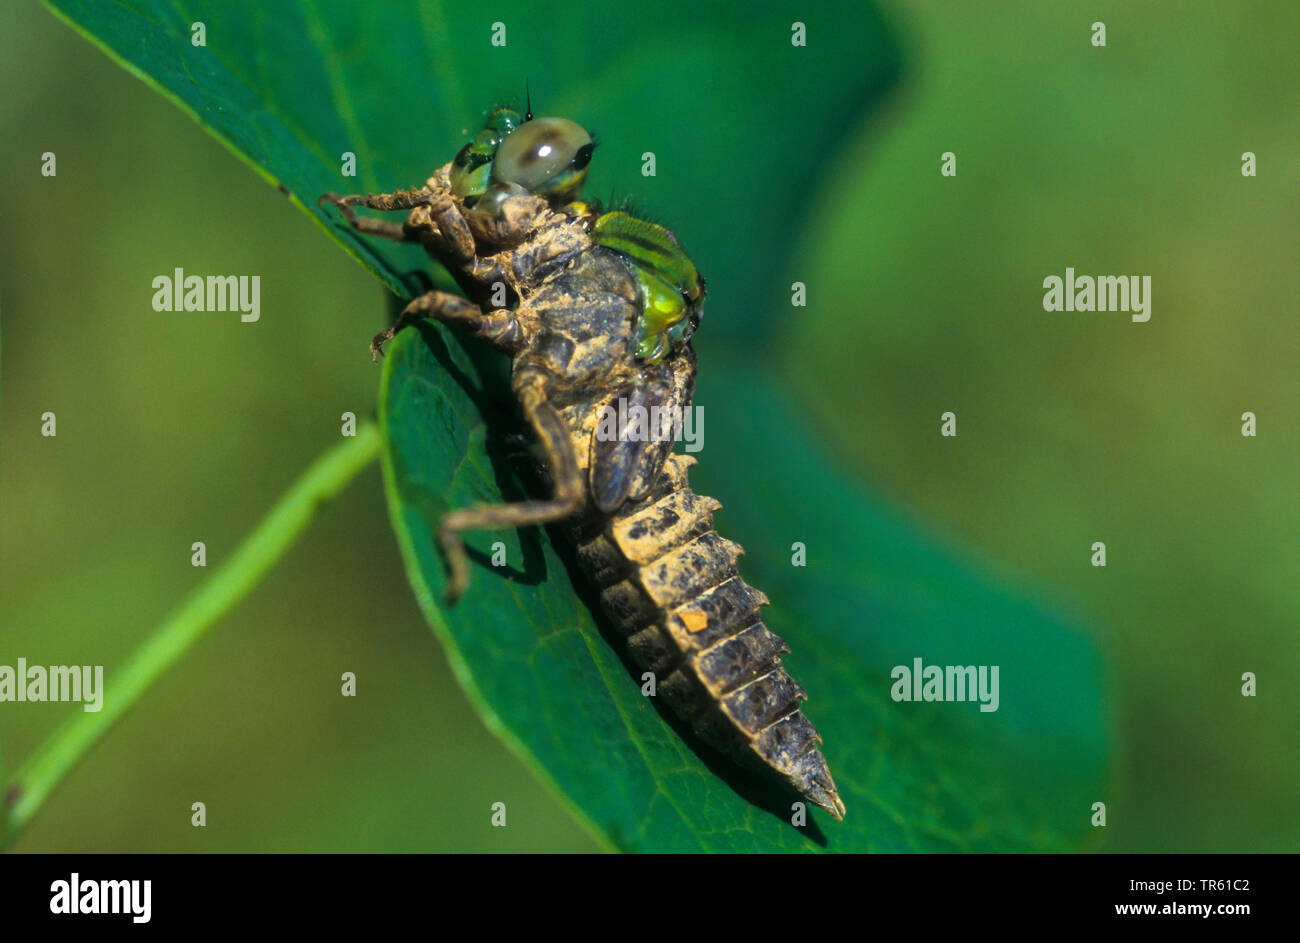 Libélula, serpentina verde (Ophiogomphus serpentinus Snaketail, Ophiogomphus cecilia), larva sentada sobre una hoja, vista lateral, Alemania Foto de stock